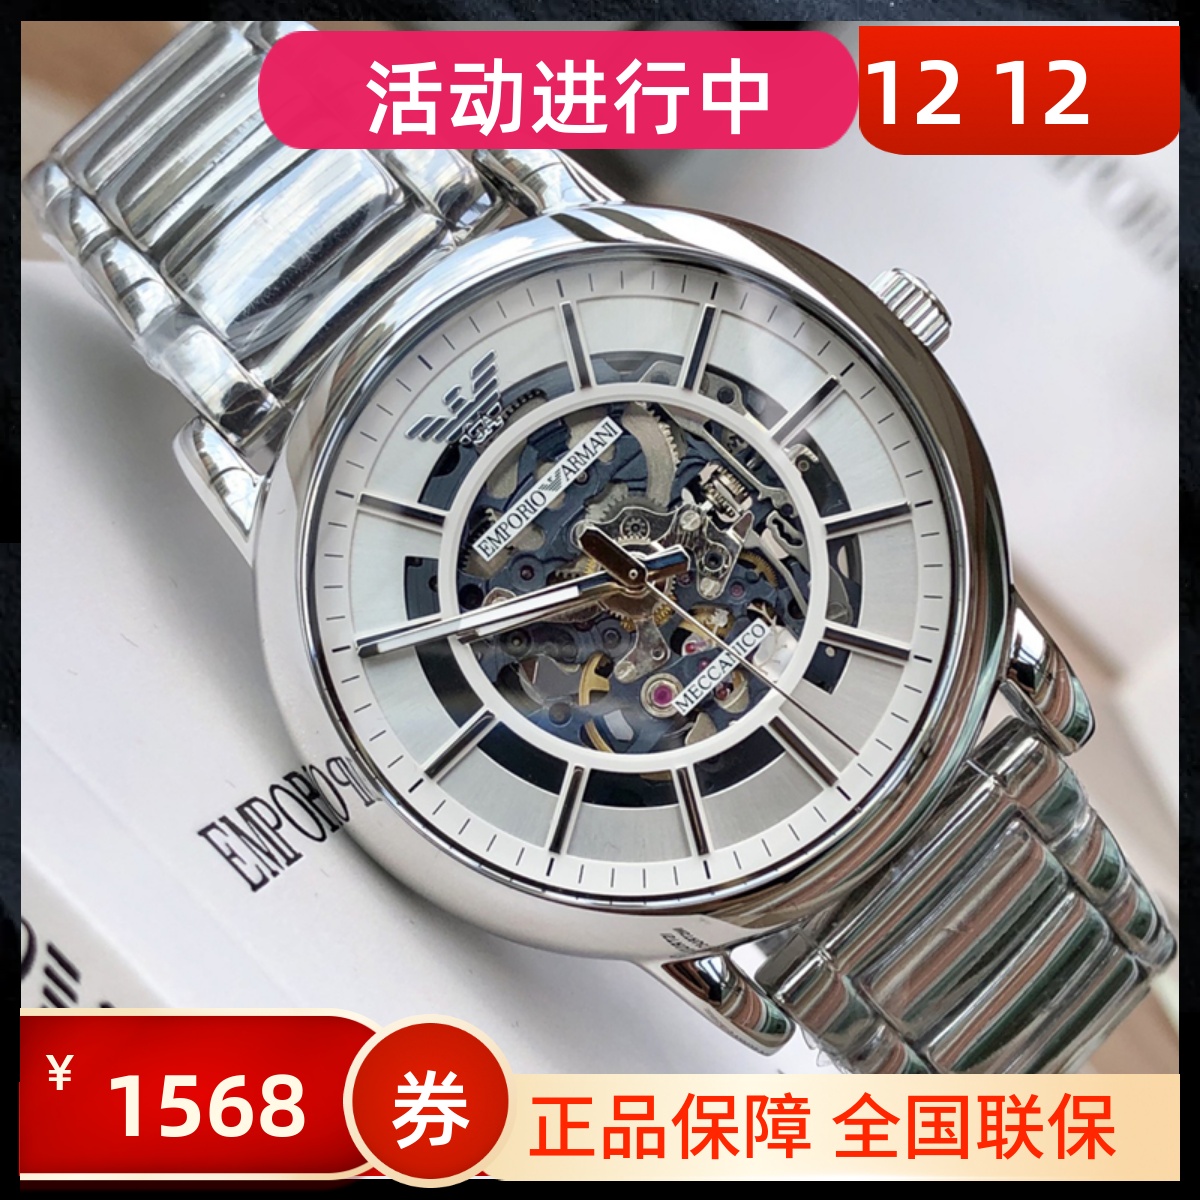 意大利 阿玛尼手表 ar5929 橡胶皮带手表 运动 日历 白色腕表_东方时道手表专营店